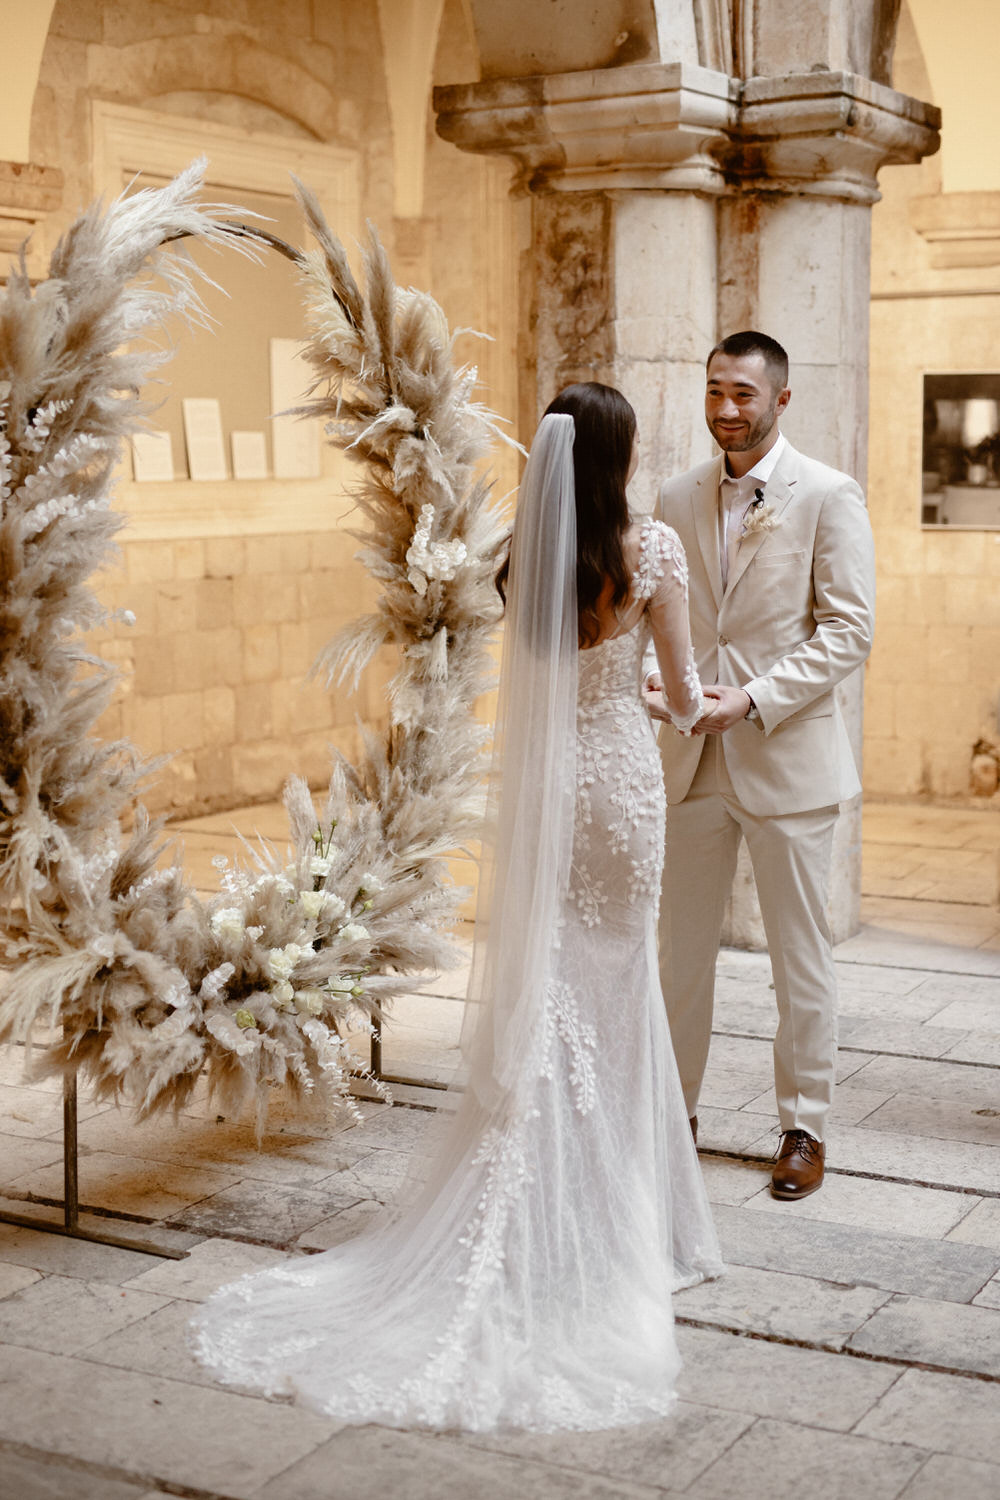 Dubrovnik elopement wedding Emma Lucas 046 | Croatia Elopement Photographer and Videographer